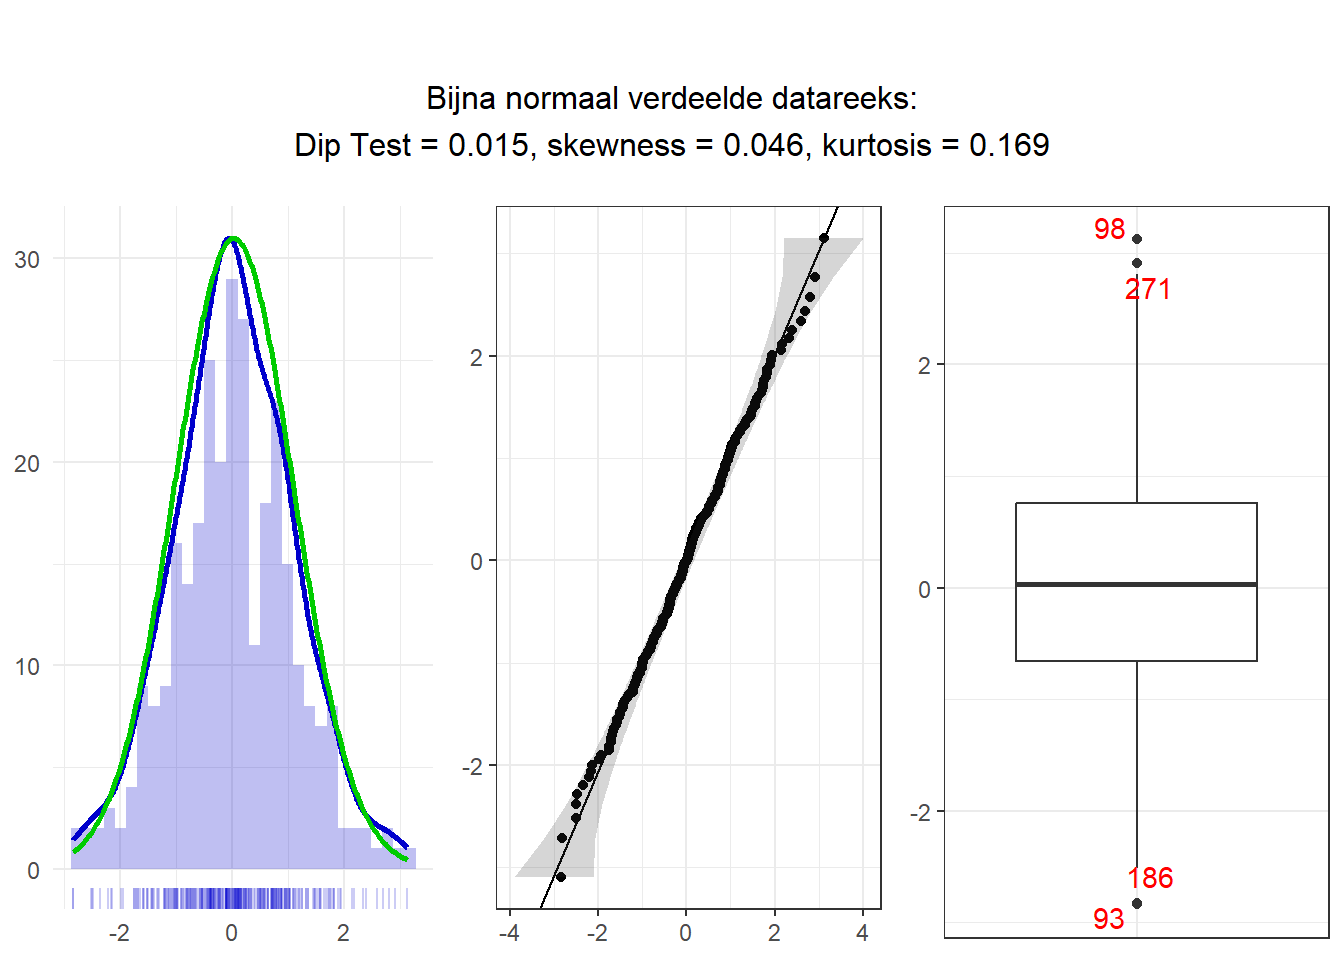 Een histogram, Q-Q-plot en boxplot van een bijna normaal verdeelde datareeks, inclusief de waarden van de diptest, skewness en kurtosis